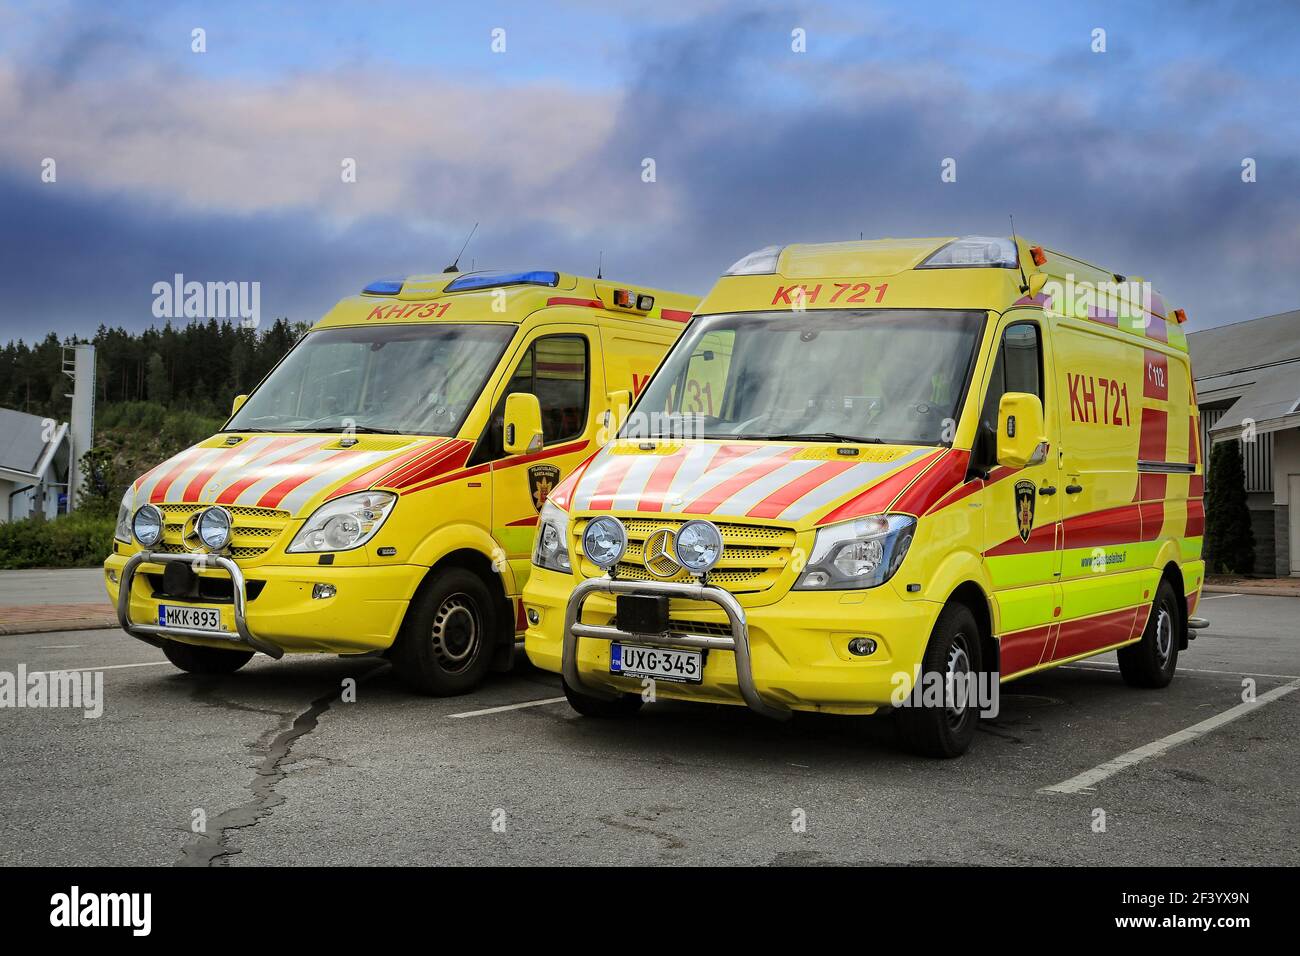 Deux véhicules d'ambulance Mercedes-Benz stationnés à l'extérieur d'une station-service. Finlande. Banque D'Images